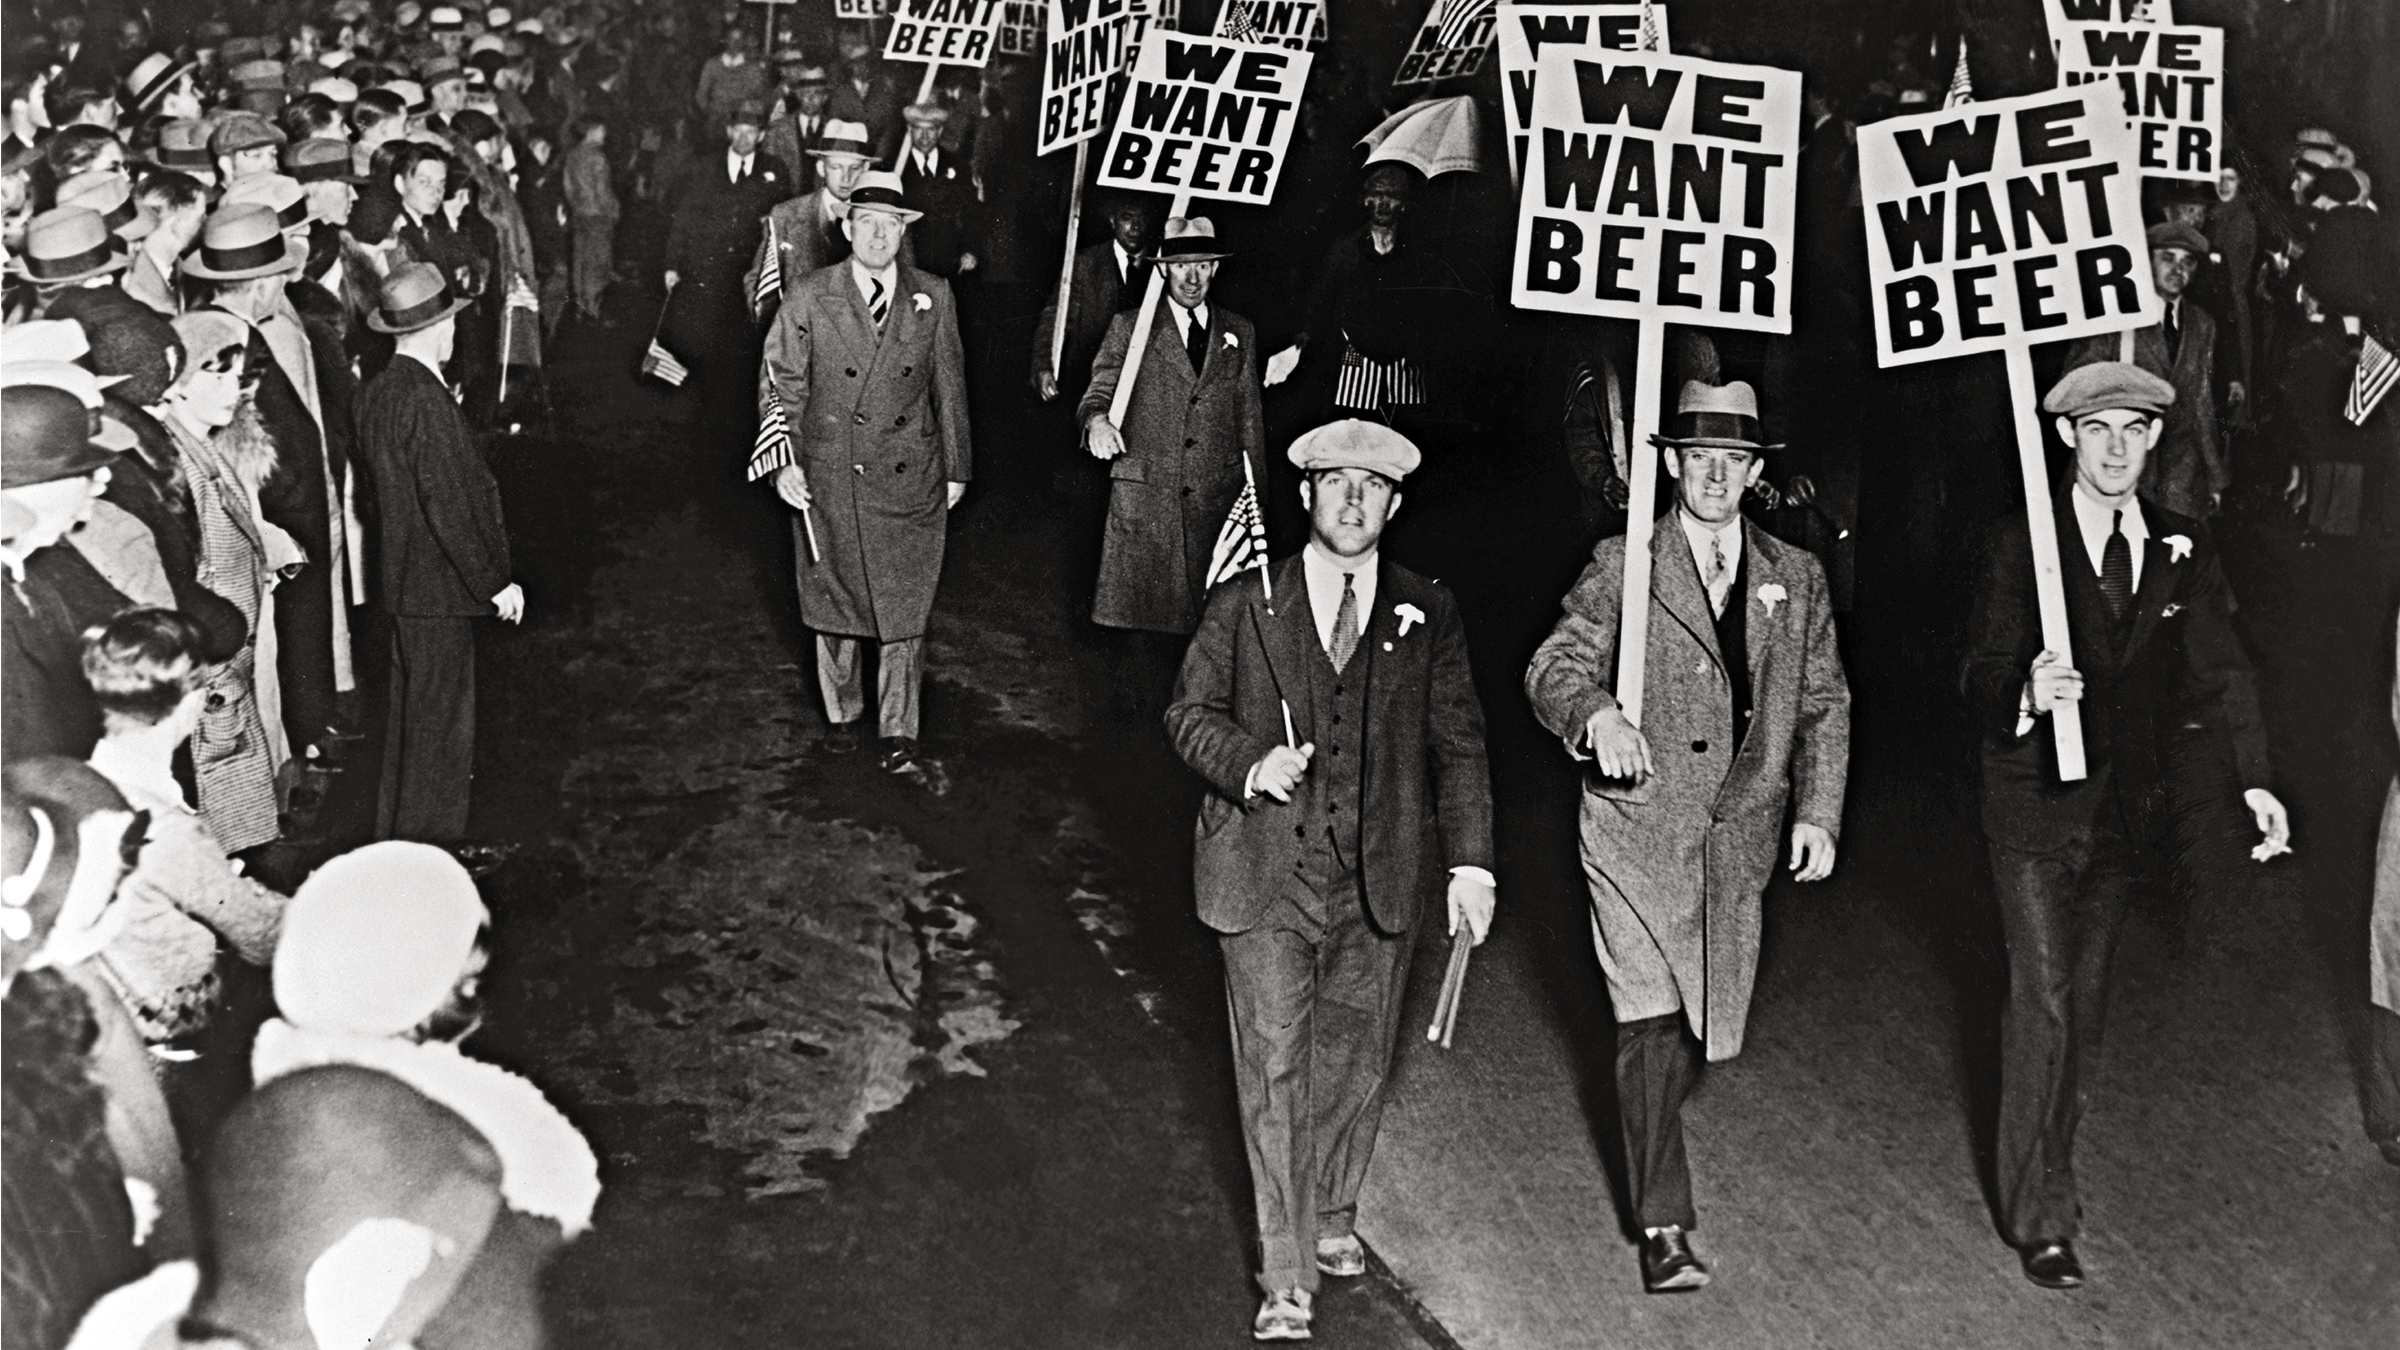 Protest march demanding beer